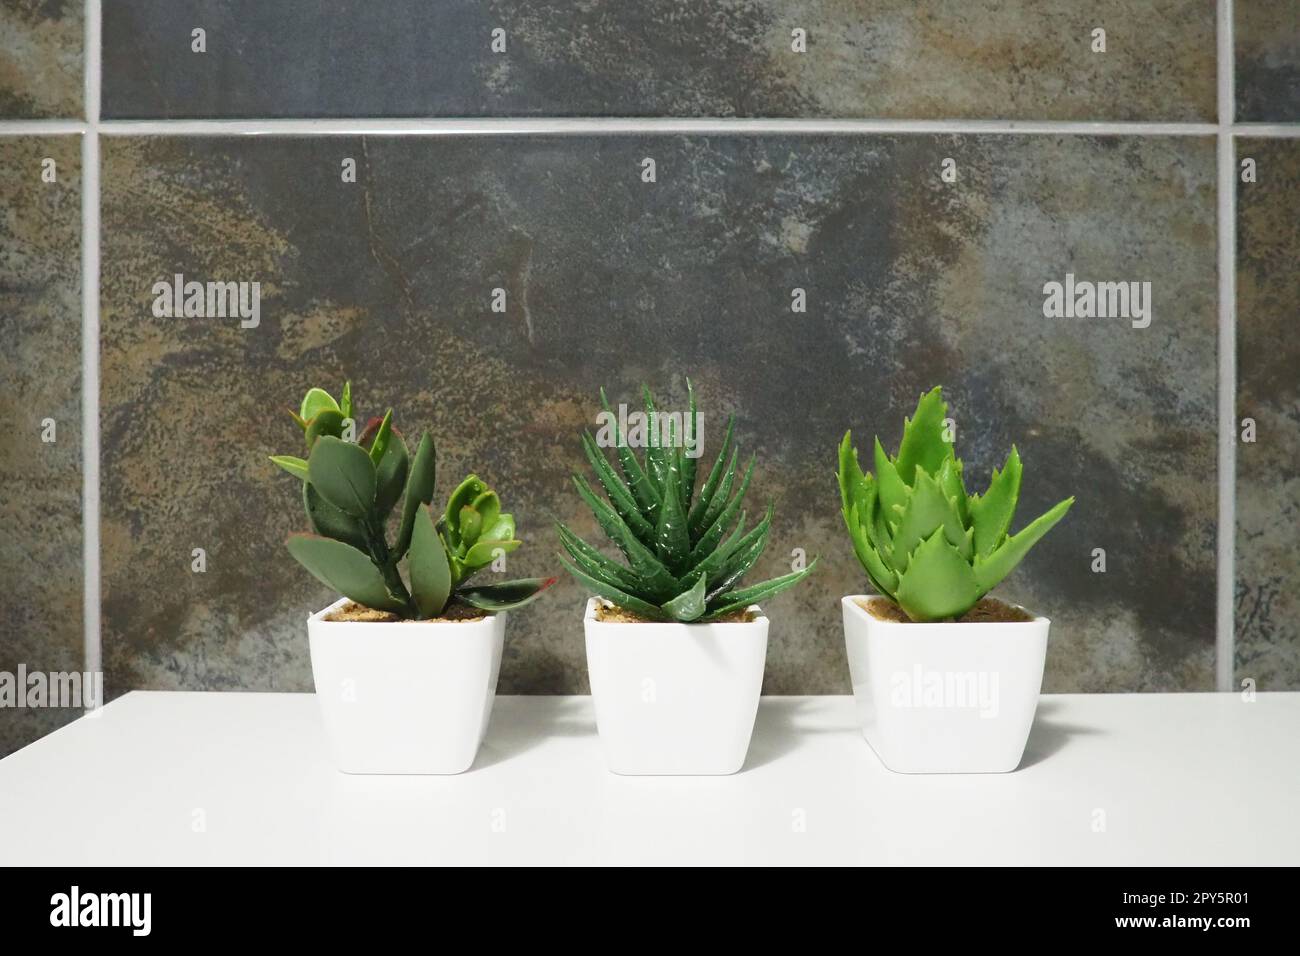 Elementi di design del bagno. Interni con piastrelle nere. Tre piante di bonsai artificiali verdi in piccoli vasi bianchi su un ripiano dell'armadio. Foto Stock